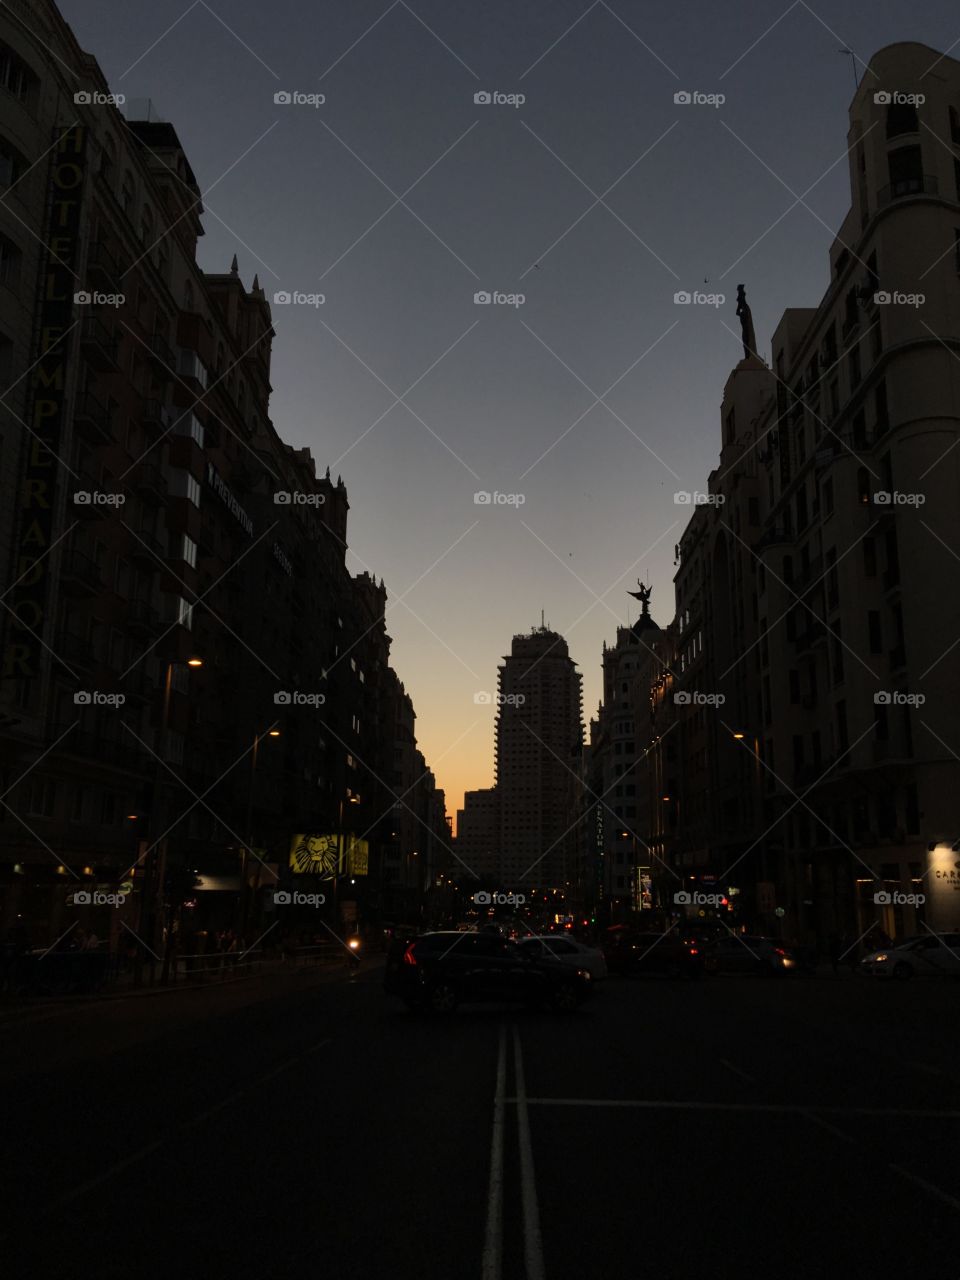 Gran Vía, Madrid, Spain. When darkness falls